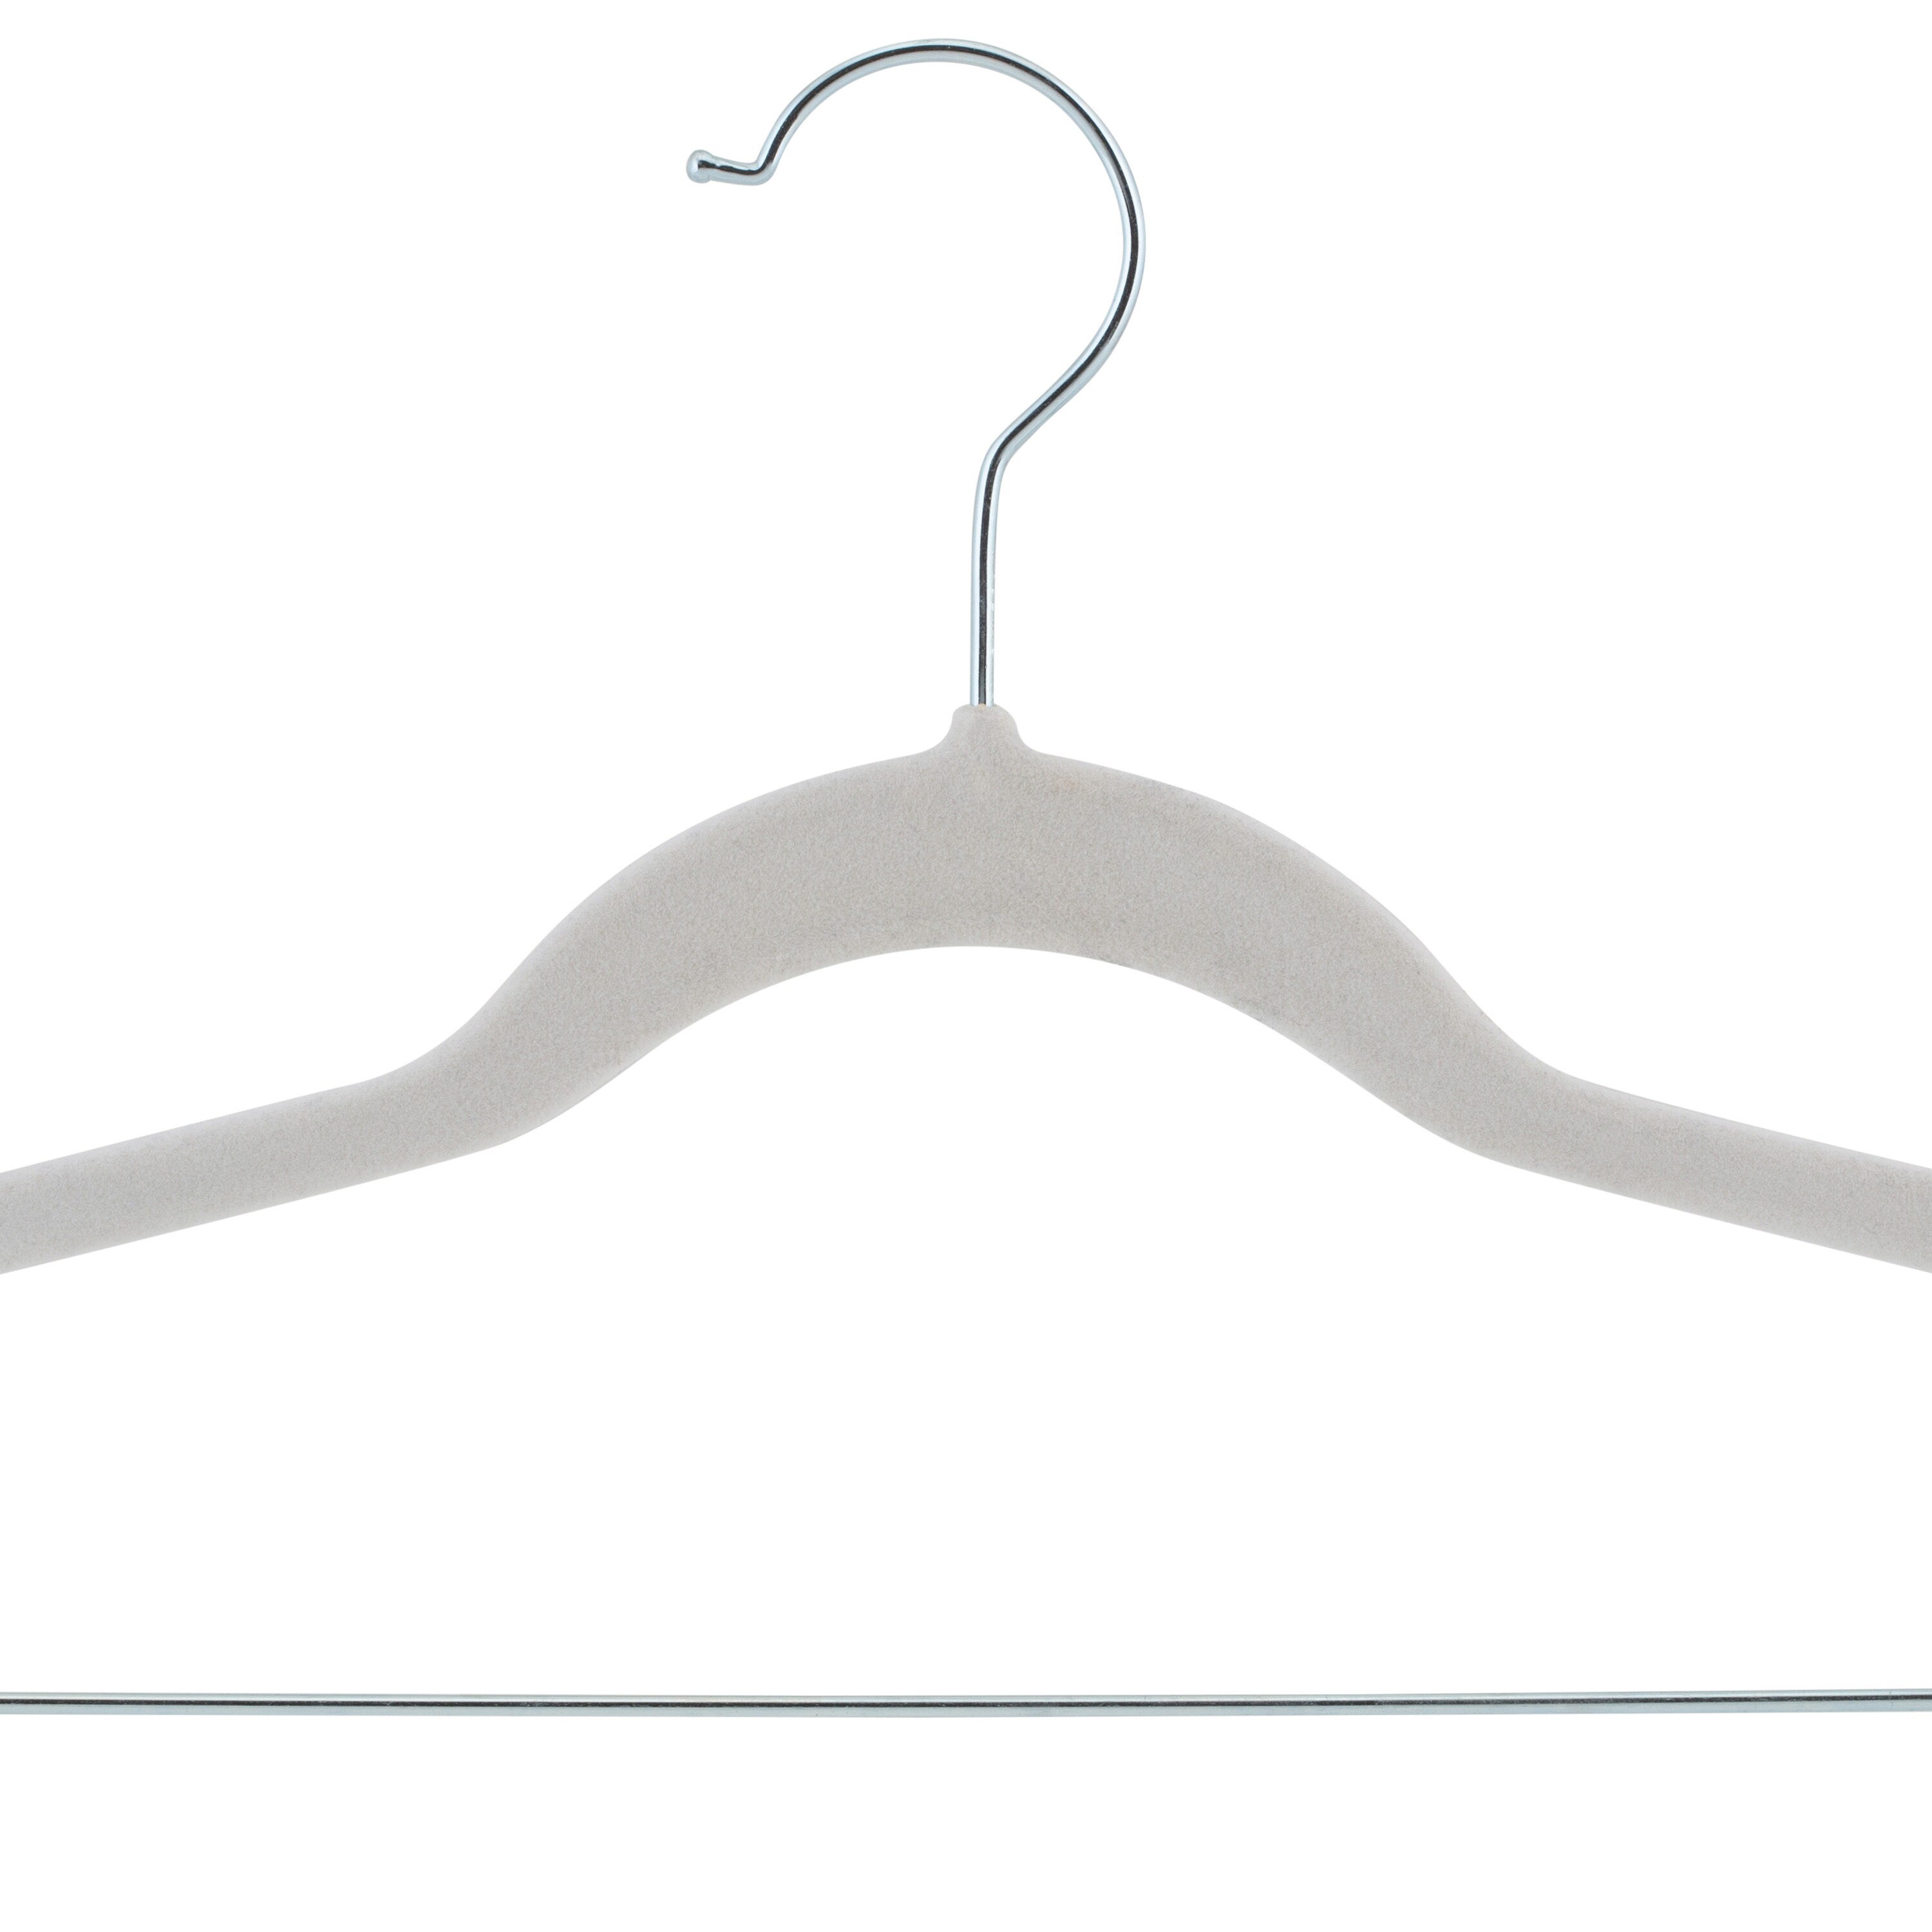 Laura Ashley Hangers Plastic Non-slip Grip Clothing Hanger (White